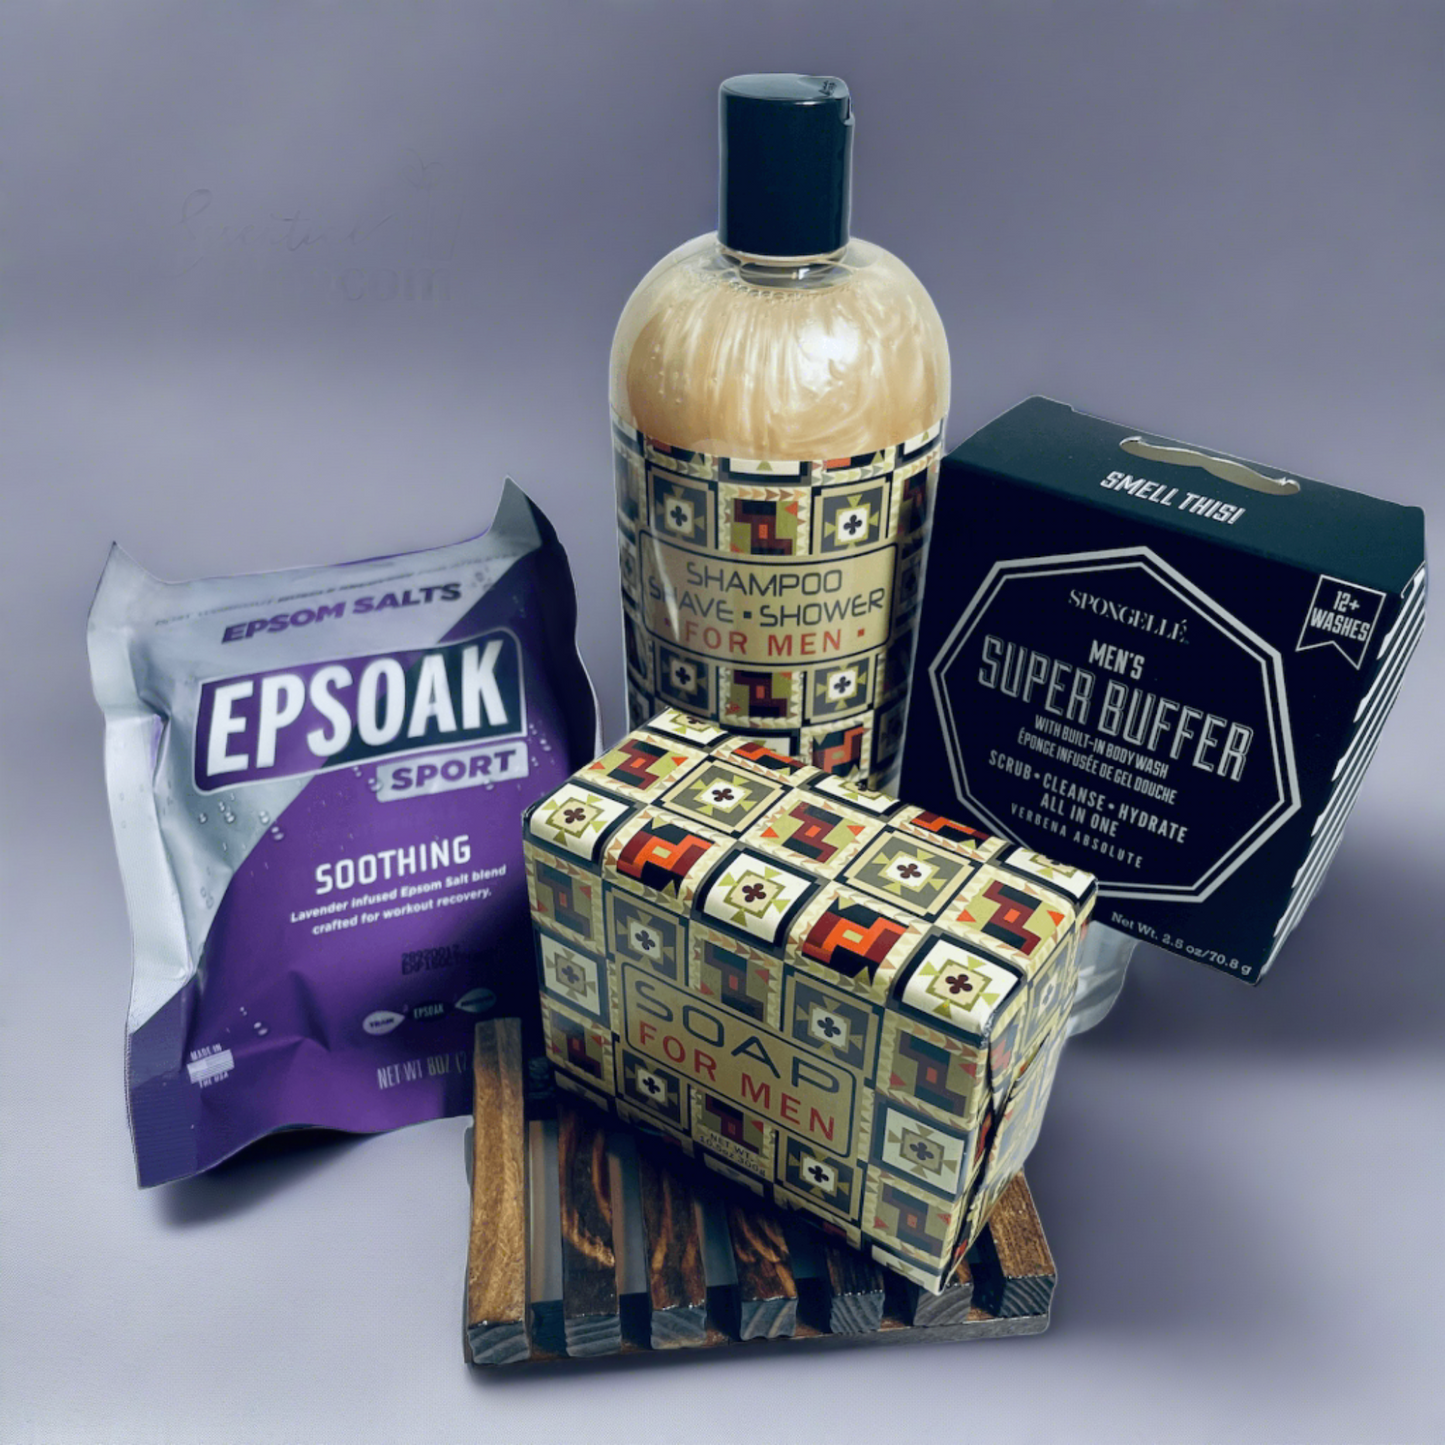 https://essentialgifting.com/products/mens-shower-bundle-gift-set